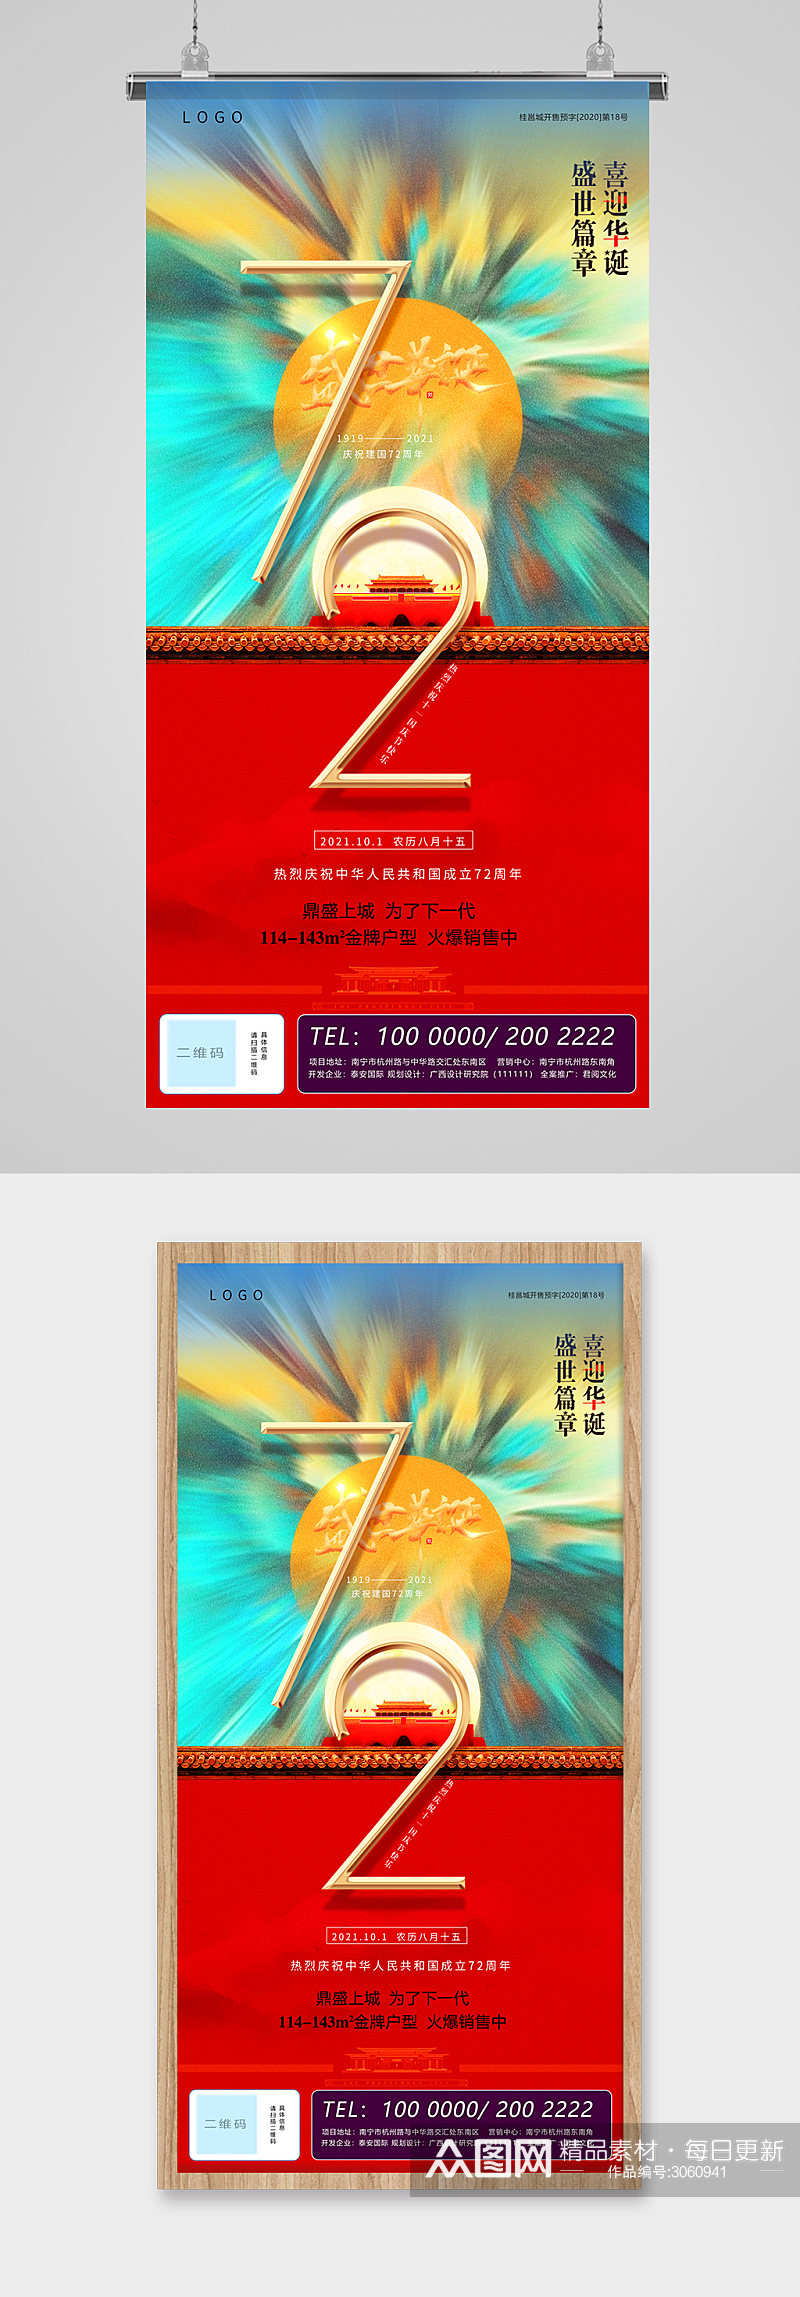 国庆节72周年红墙喜庆海报素材